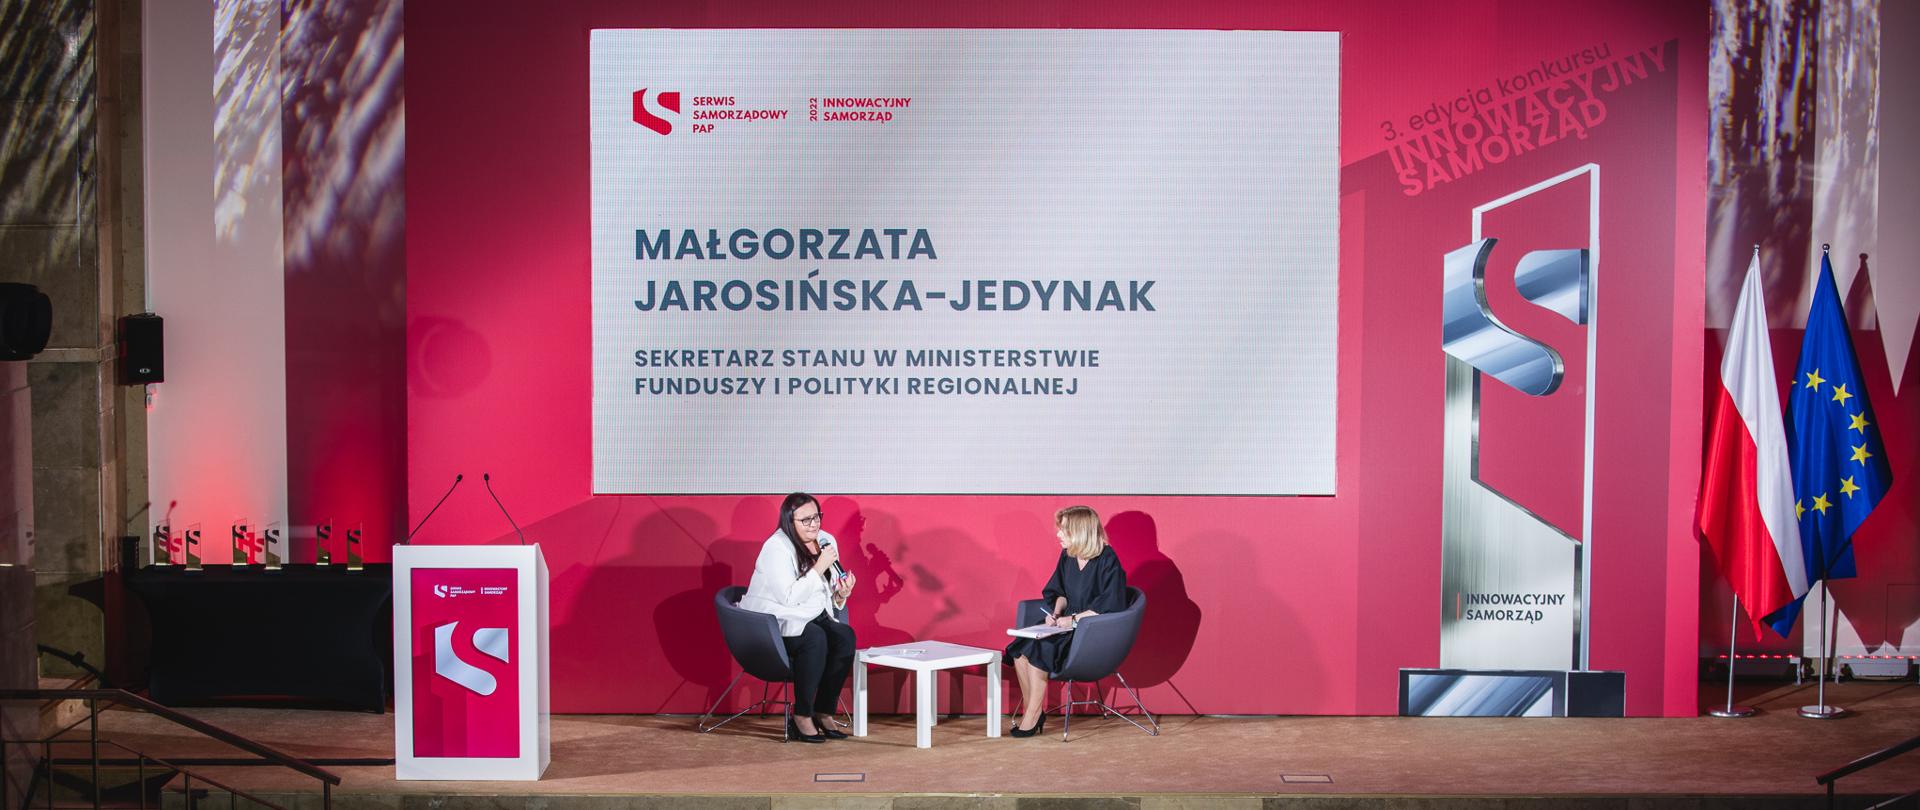 W sali konferencyjnej na scenie dwie kobiety rozmawiają przy stoliku. Z lewej wiceminister funduszy i polityki regionalnej Małgorzata Jarosińska-Jedynak.